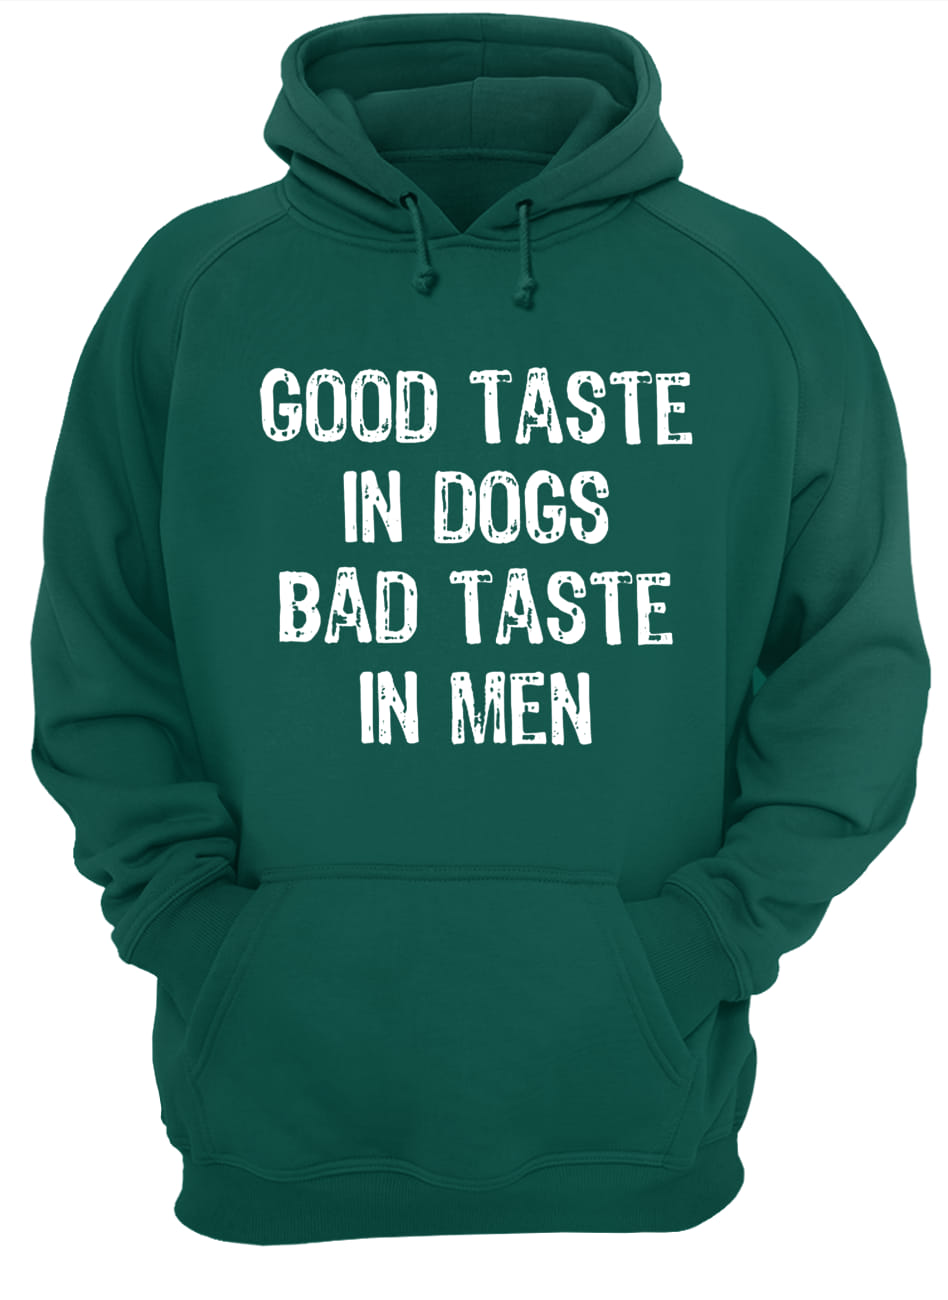 Good taste in dogs bad taste in men hoodie